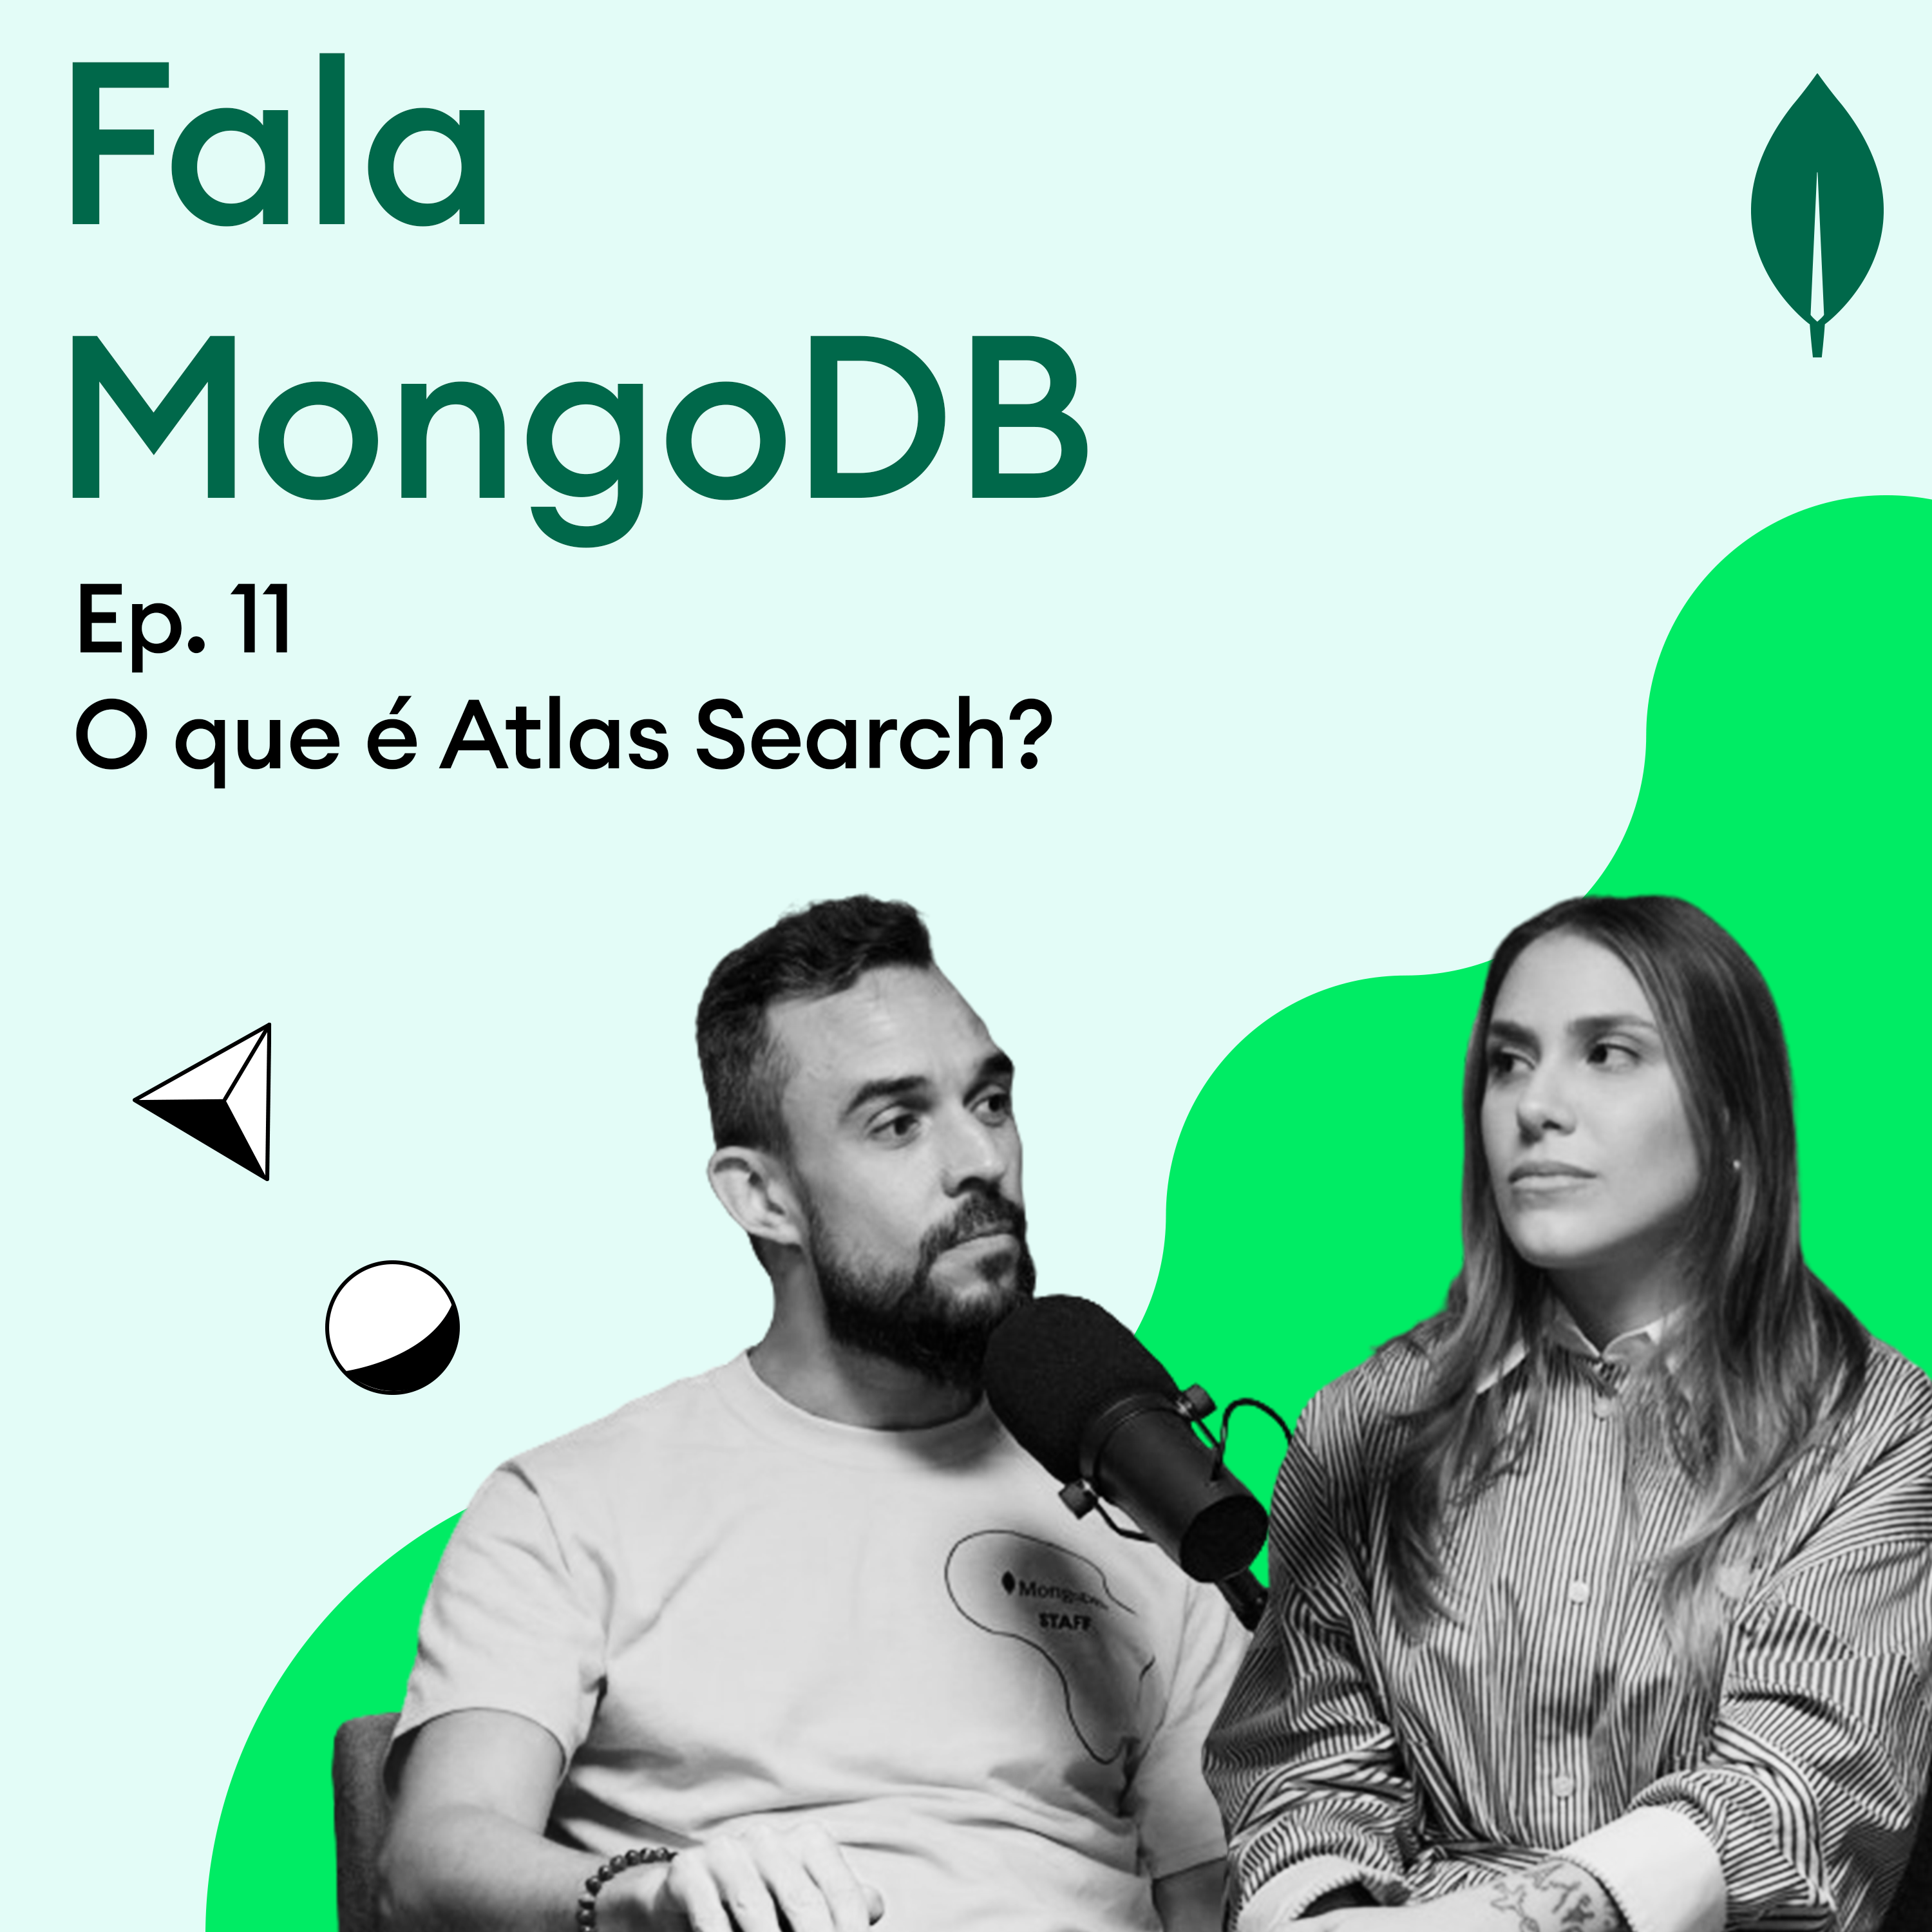 Fala MongoDB Ep. 11 O que é Atlas Search?